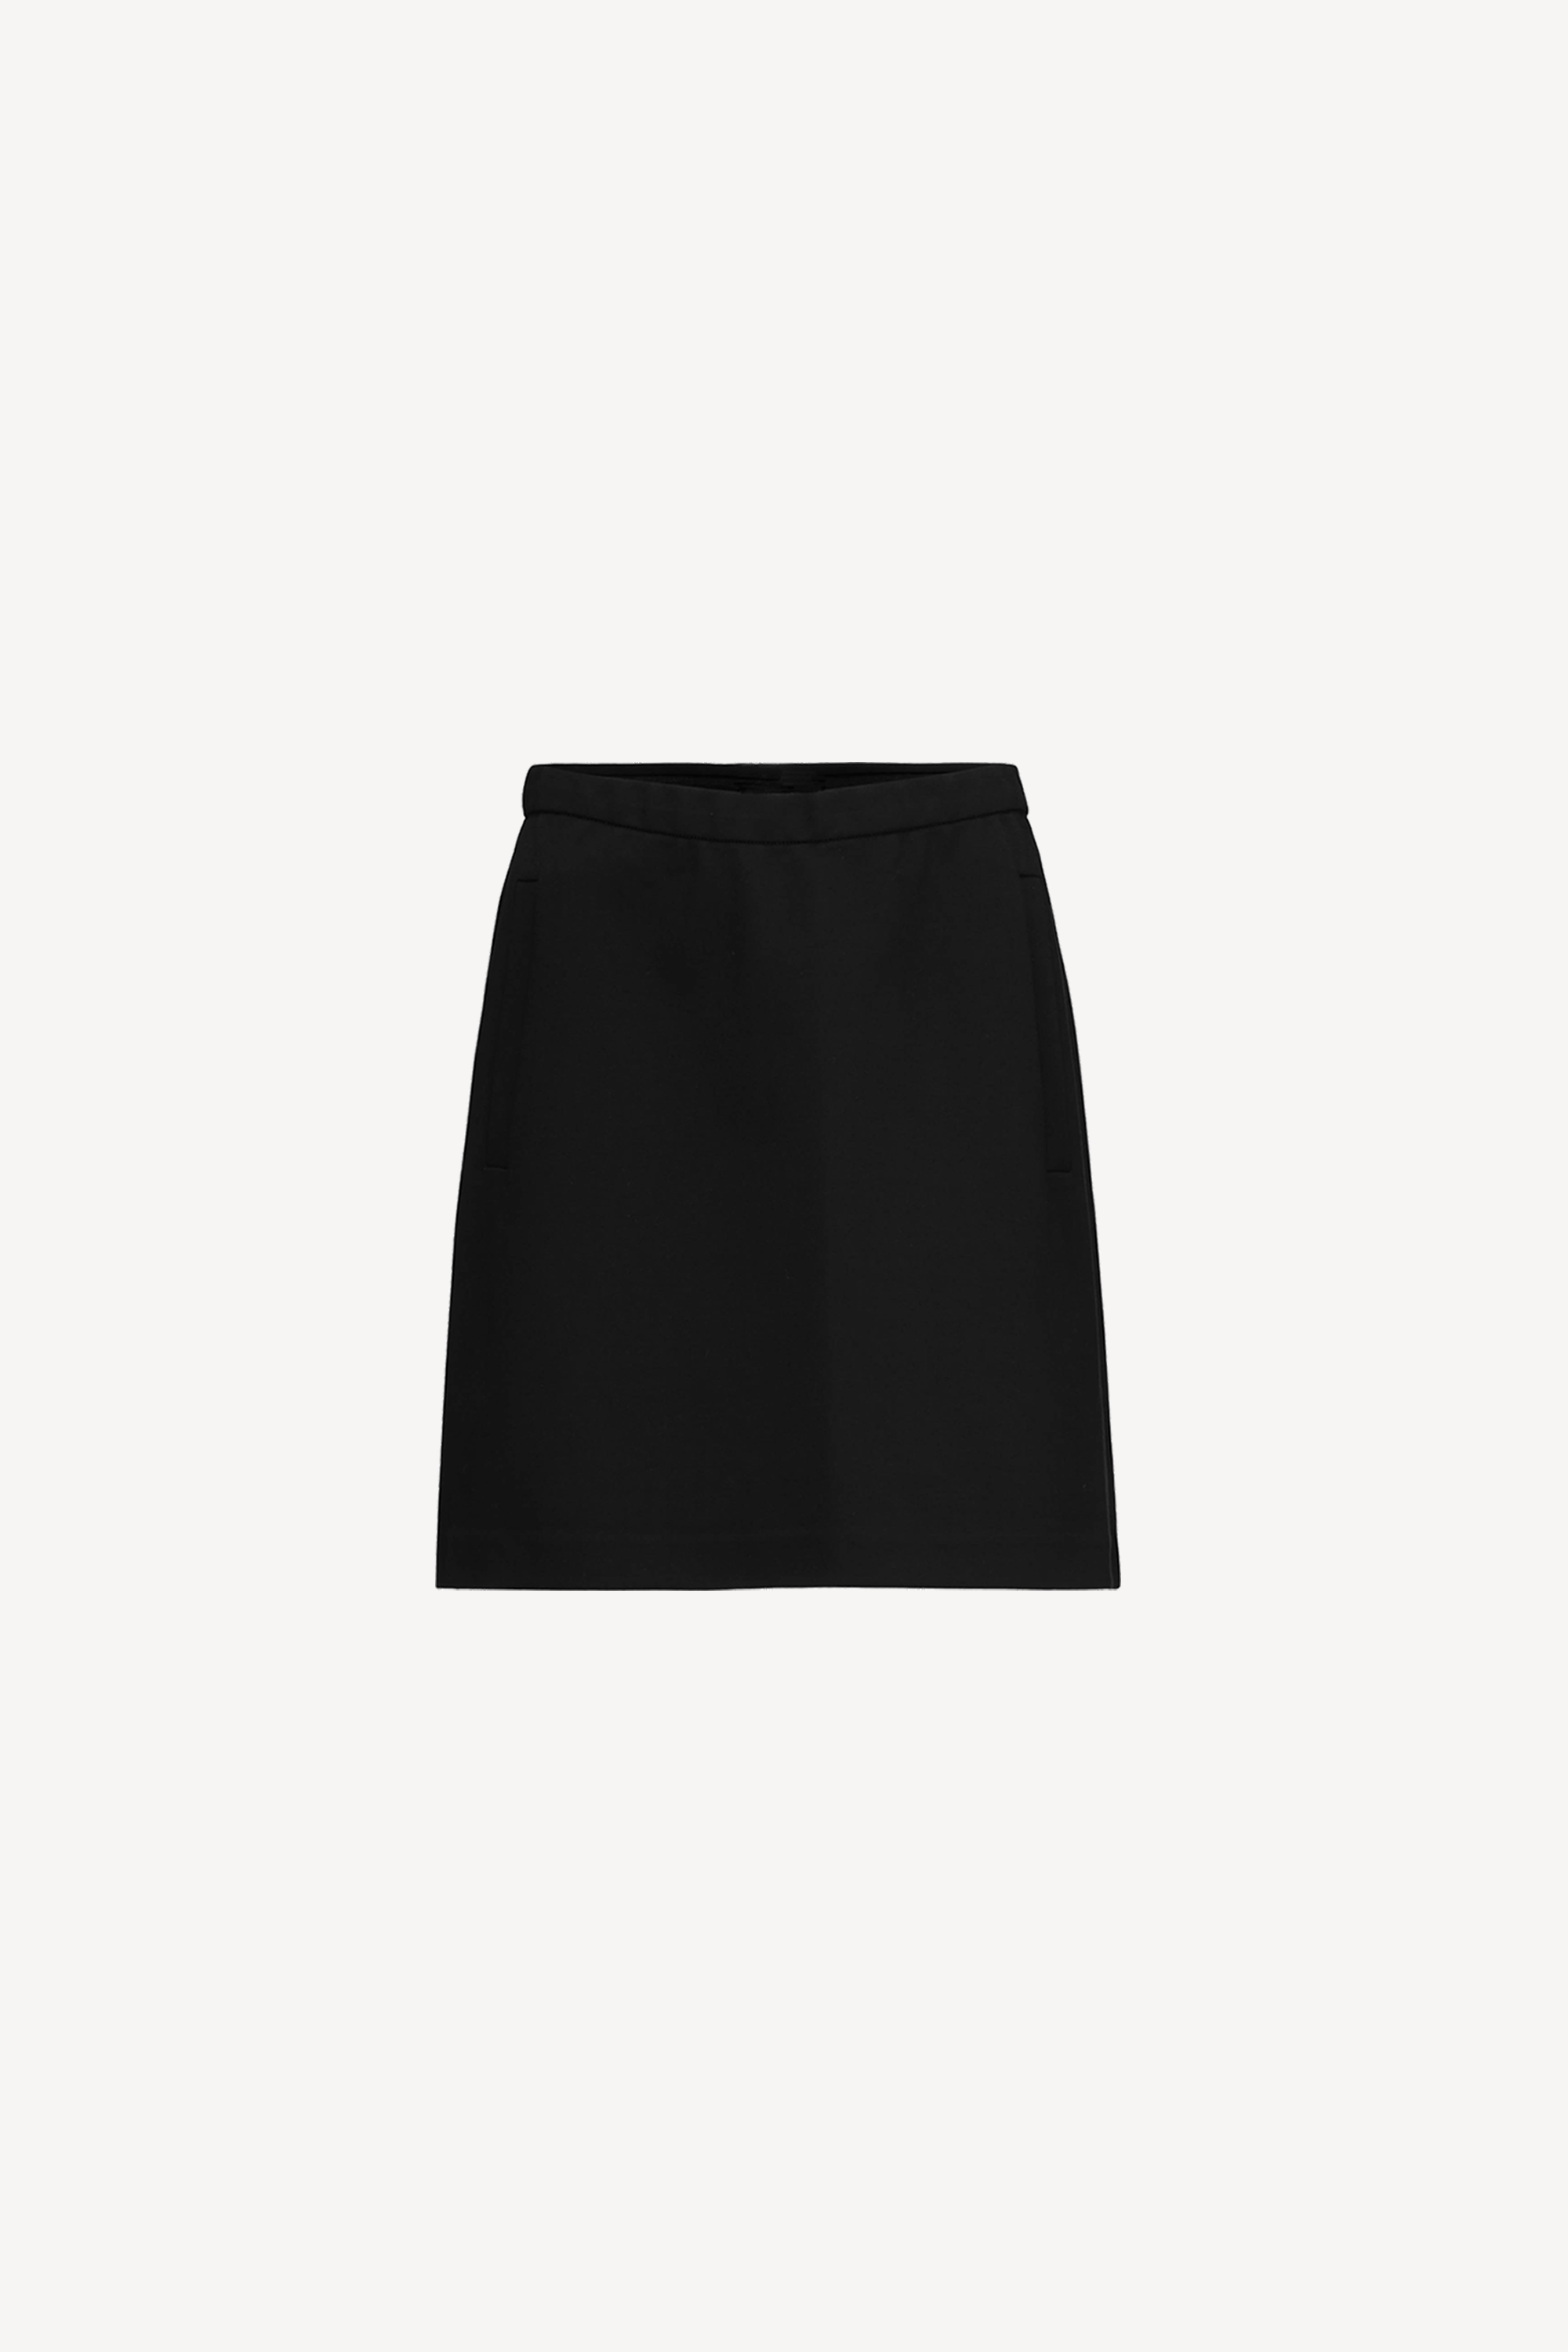 Tanny Short Skirt Black